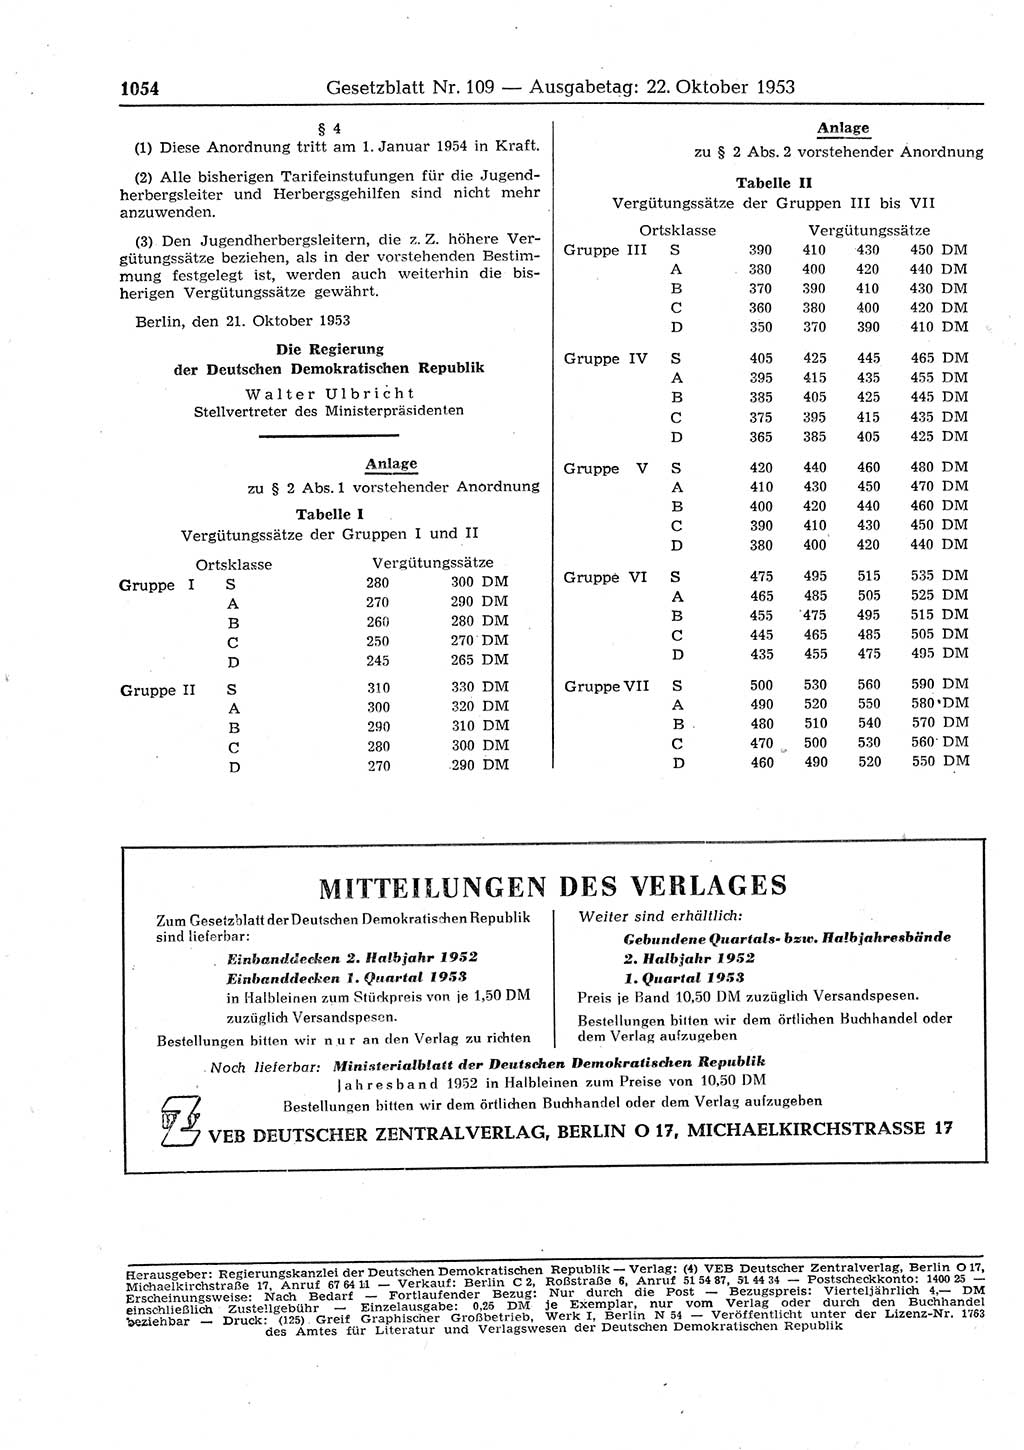 Gesetzblatt (GBl.) der Deutschen Demokratischen Republik (DDR) 1953, Seite 1054 (GBl. DDR 1953, S. 1054)